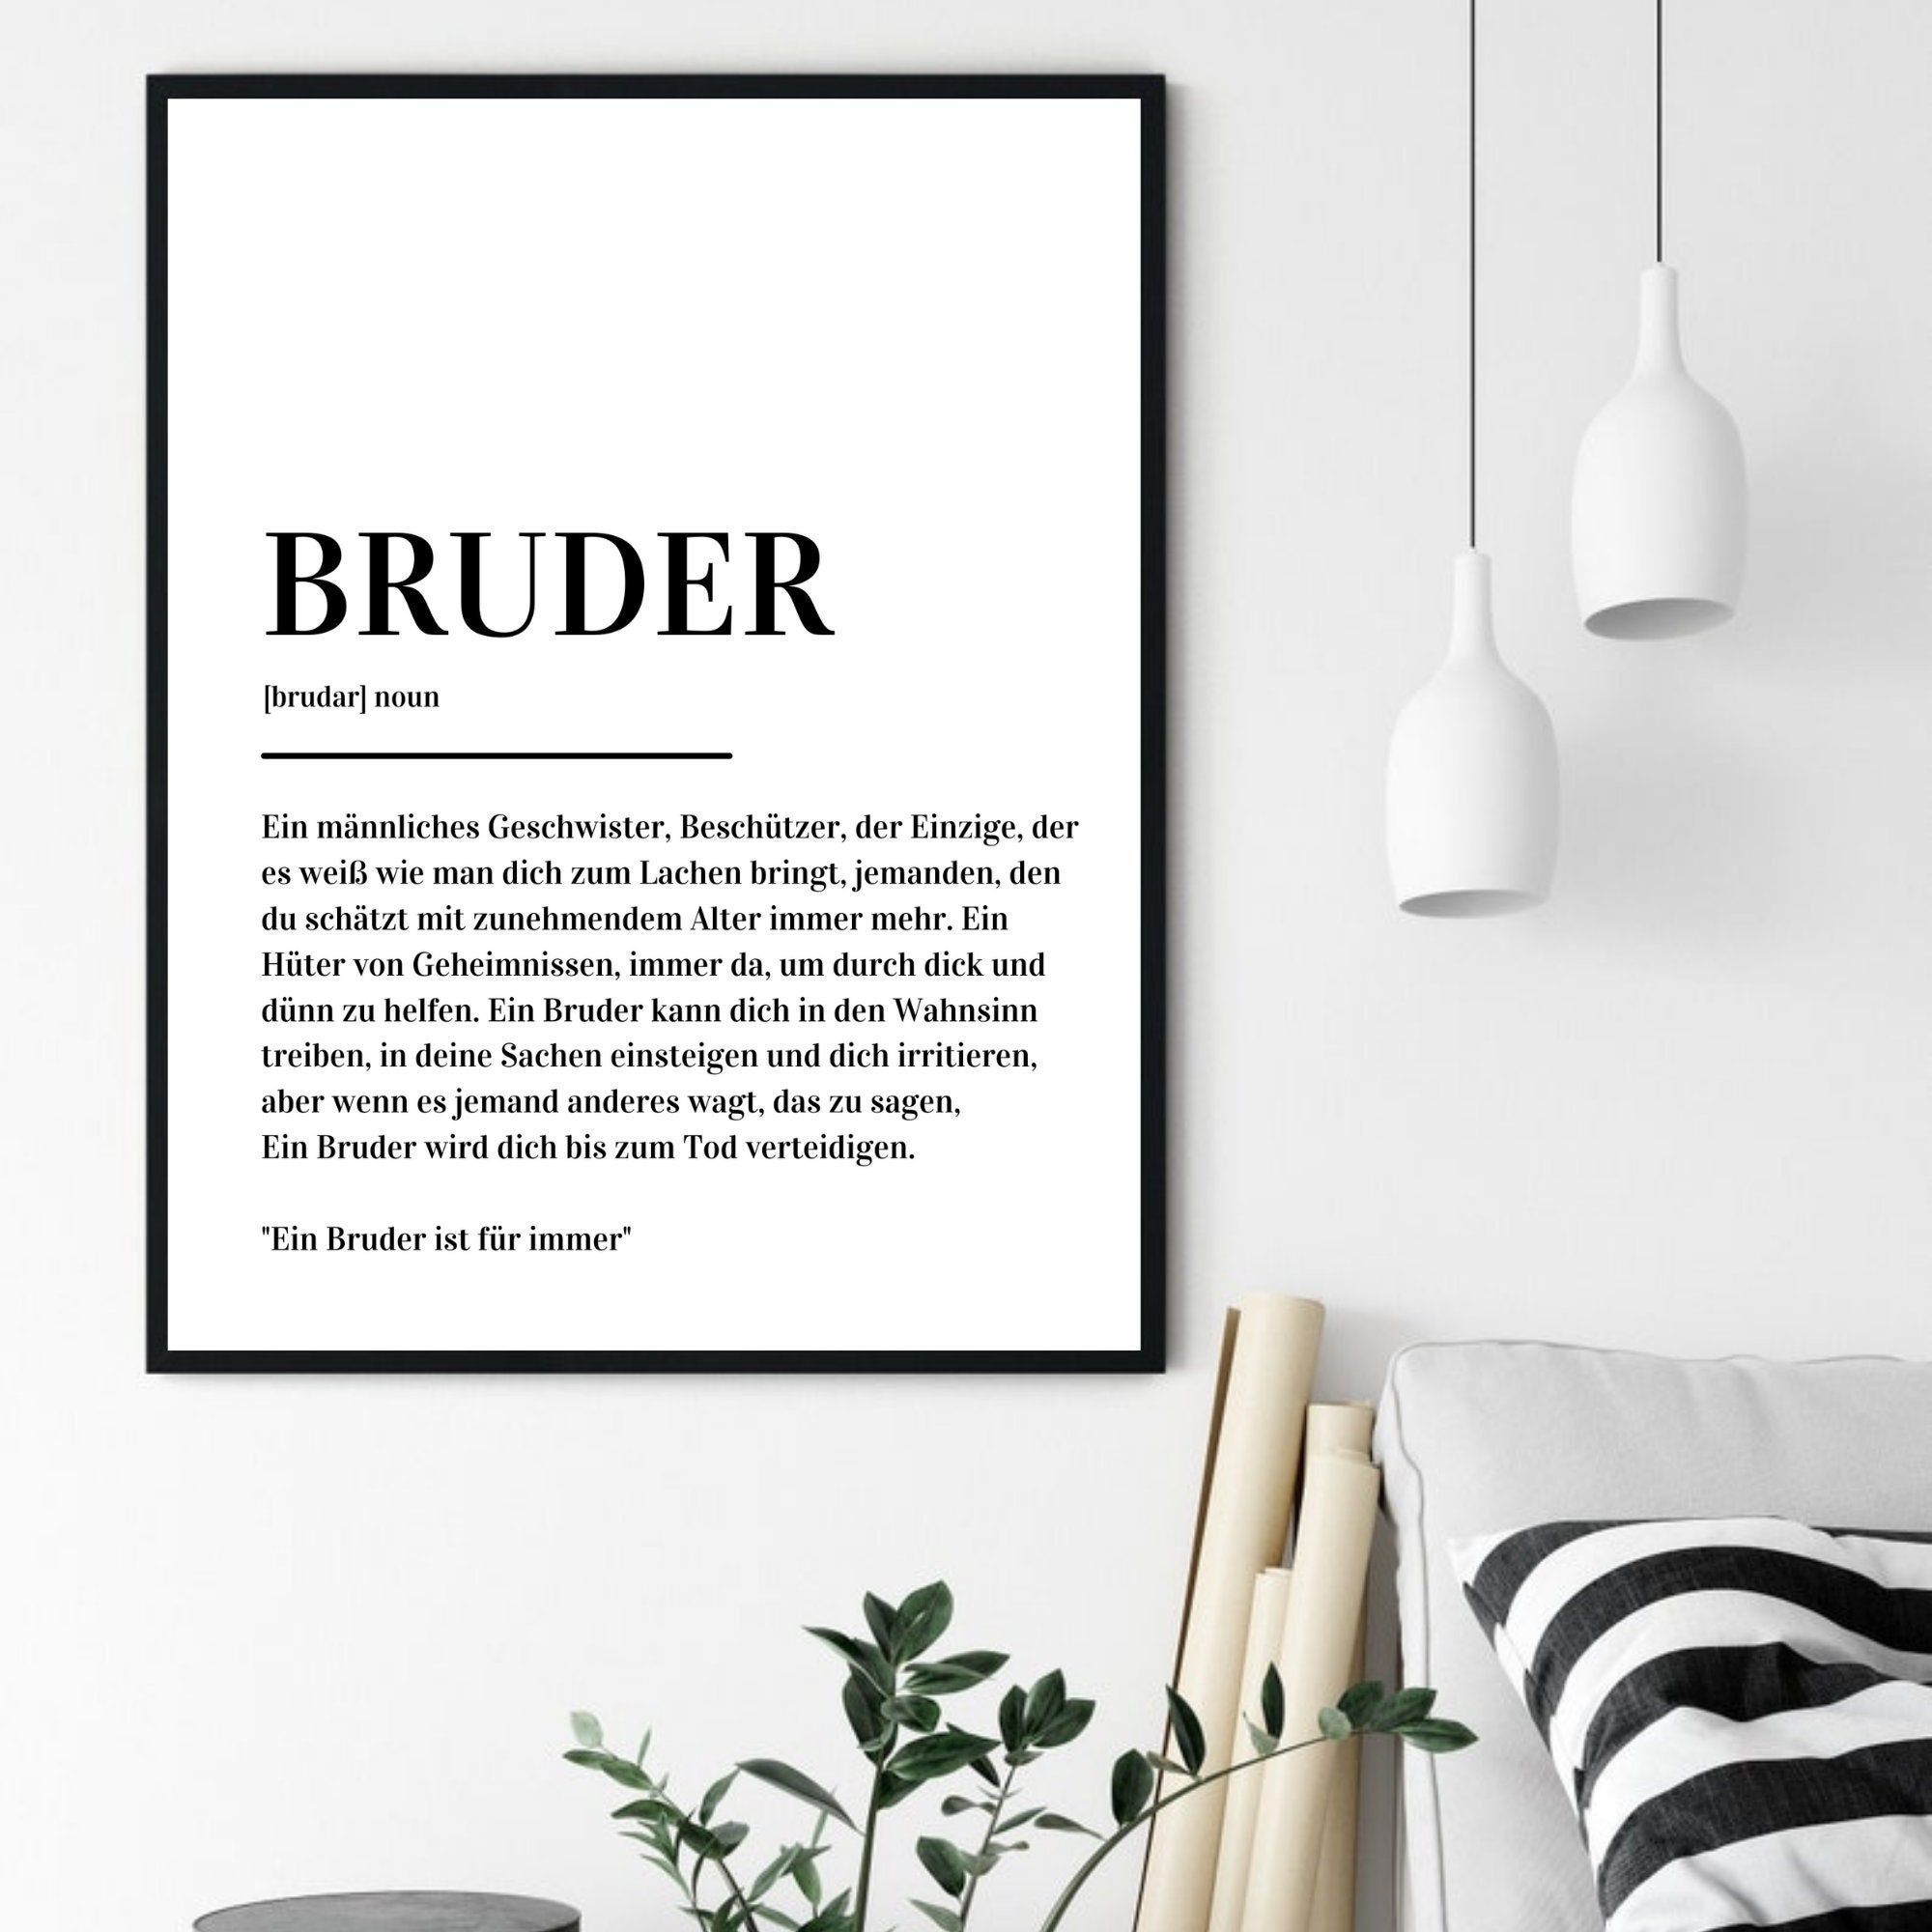 Bruder definition print for sale  